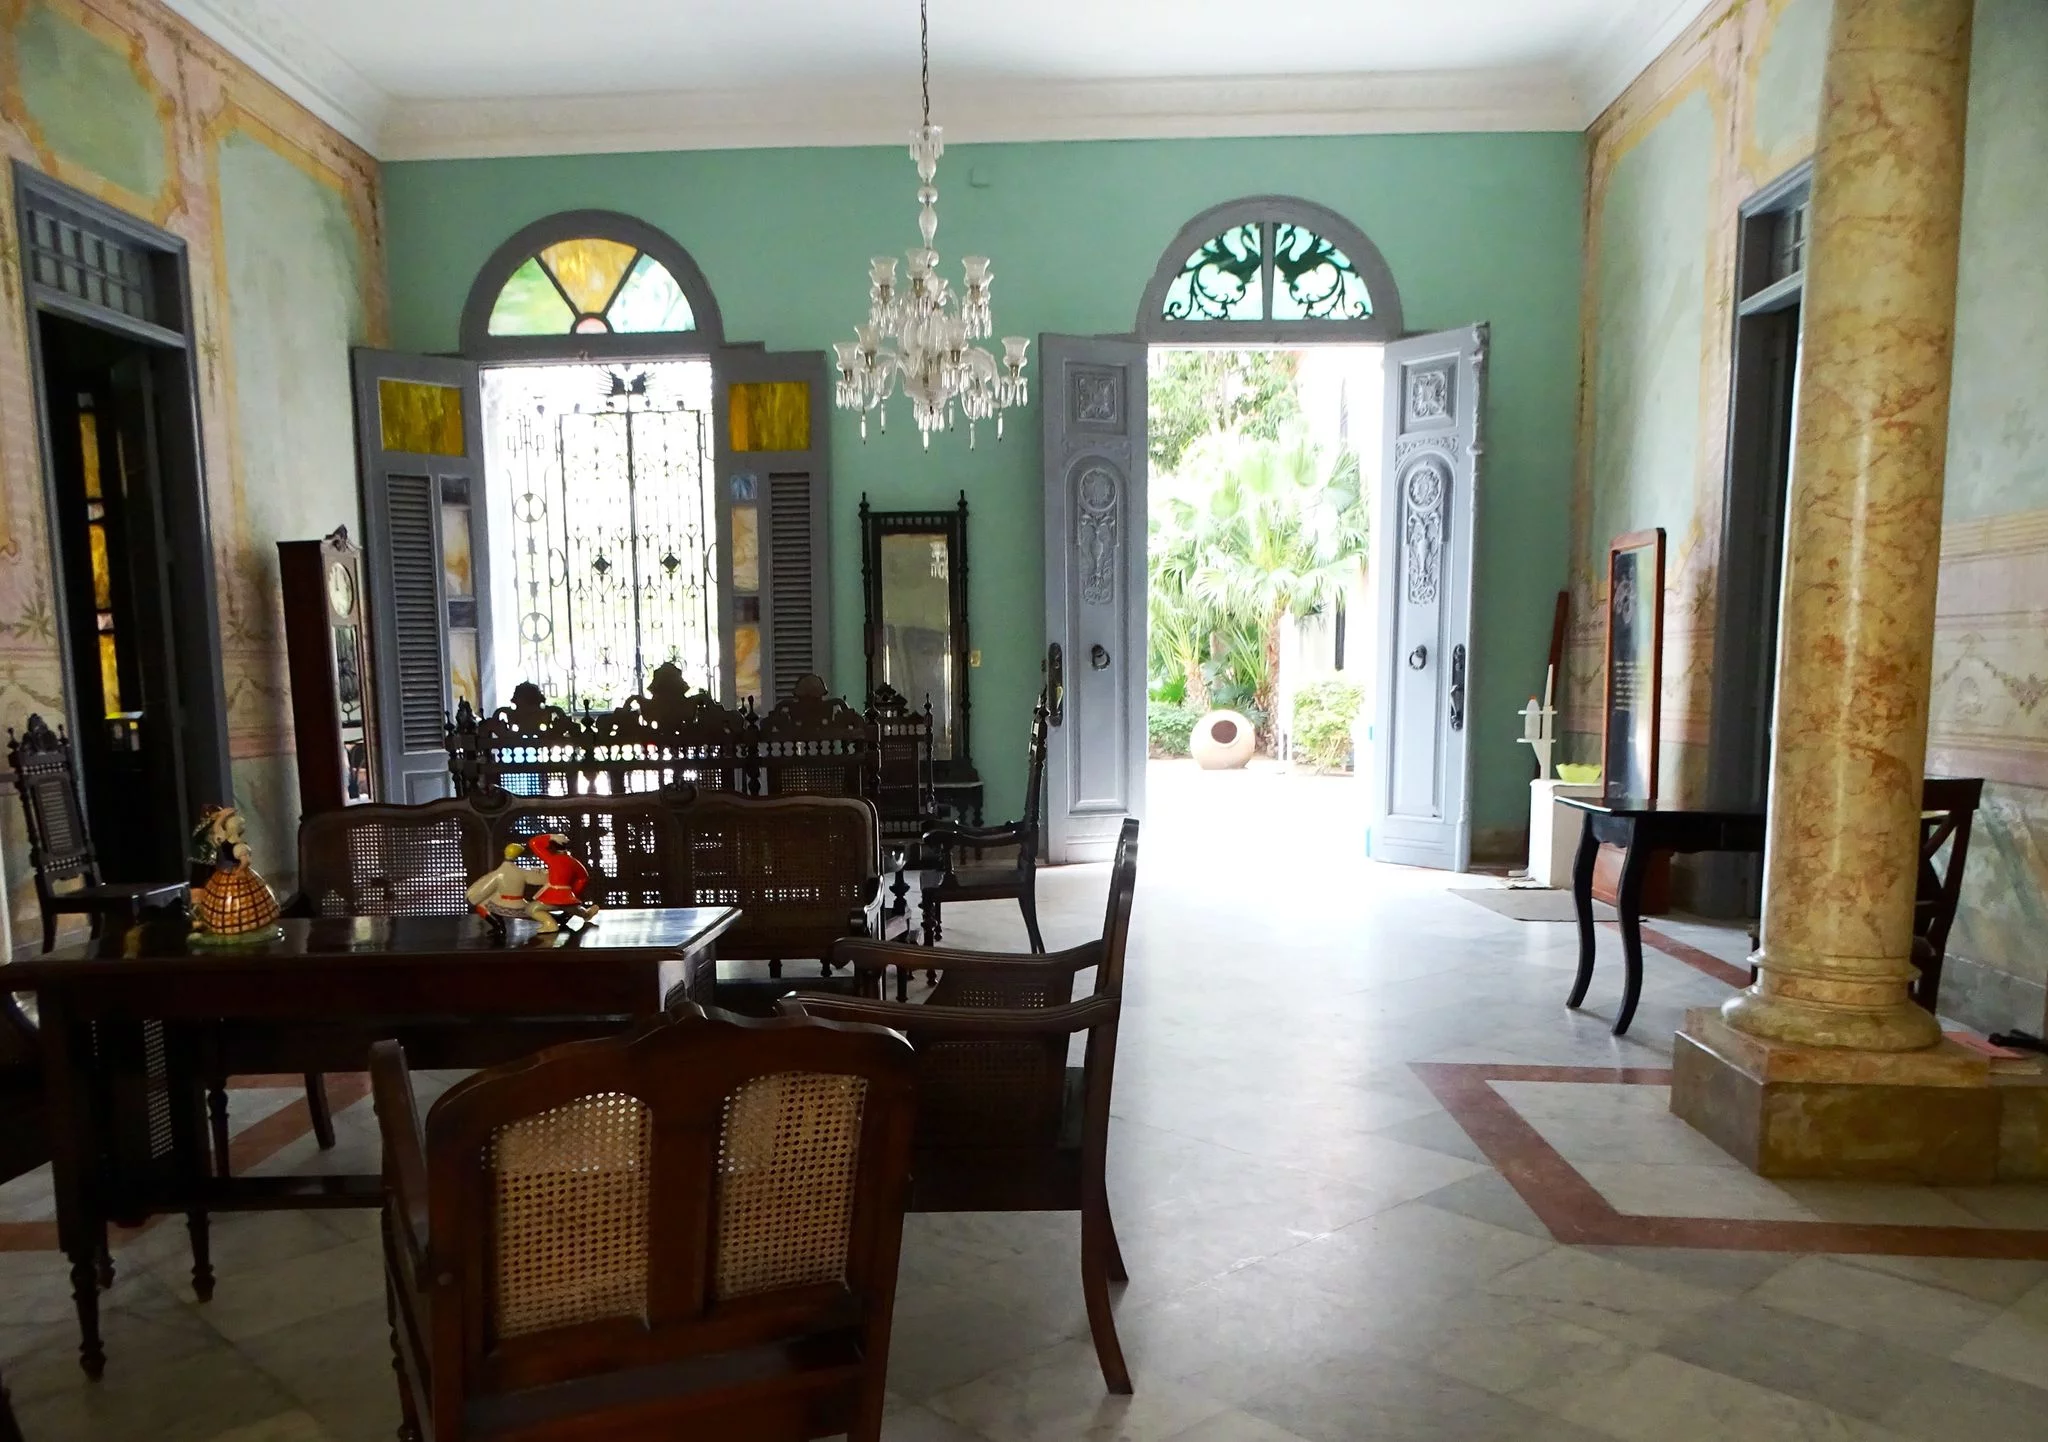 La decoración interior de las casonas camagüeyanas, una mirada al costumbrismo epocal 